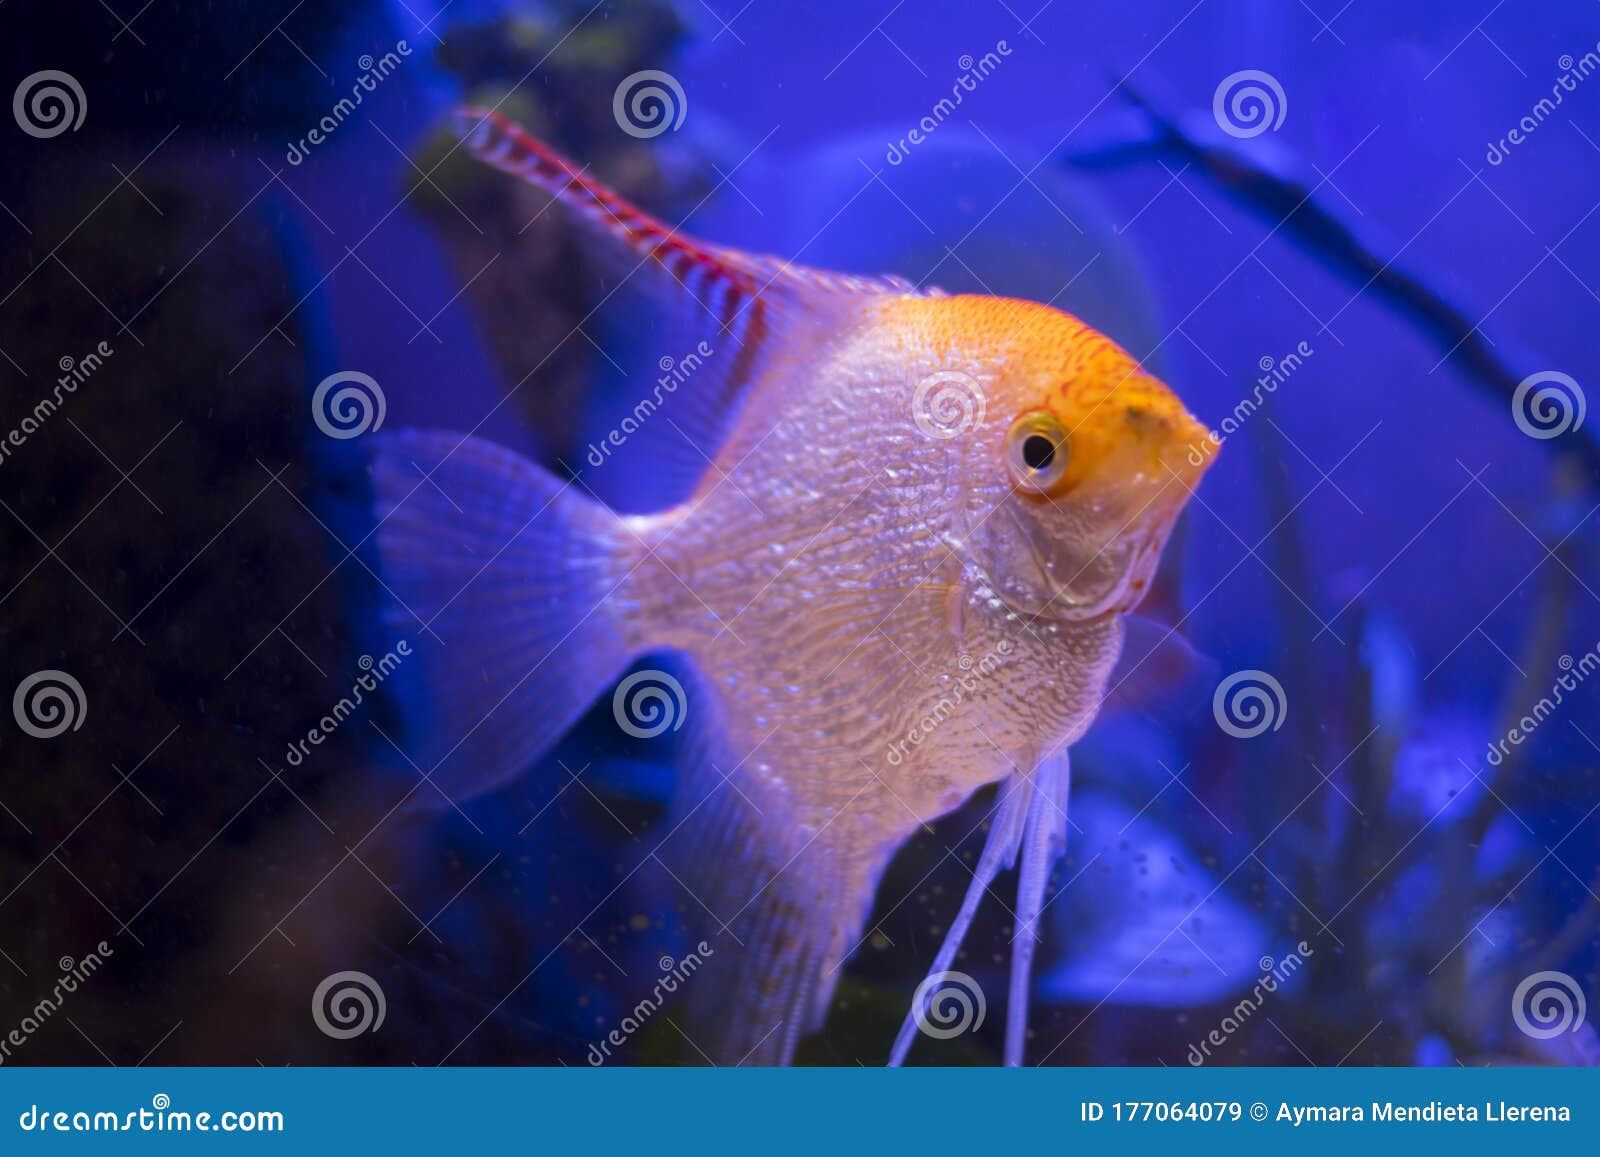 scalar fish in the aquarium